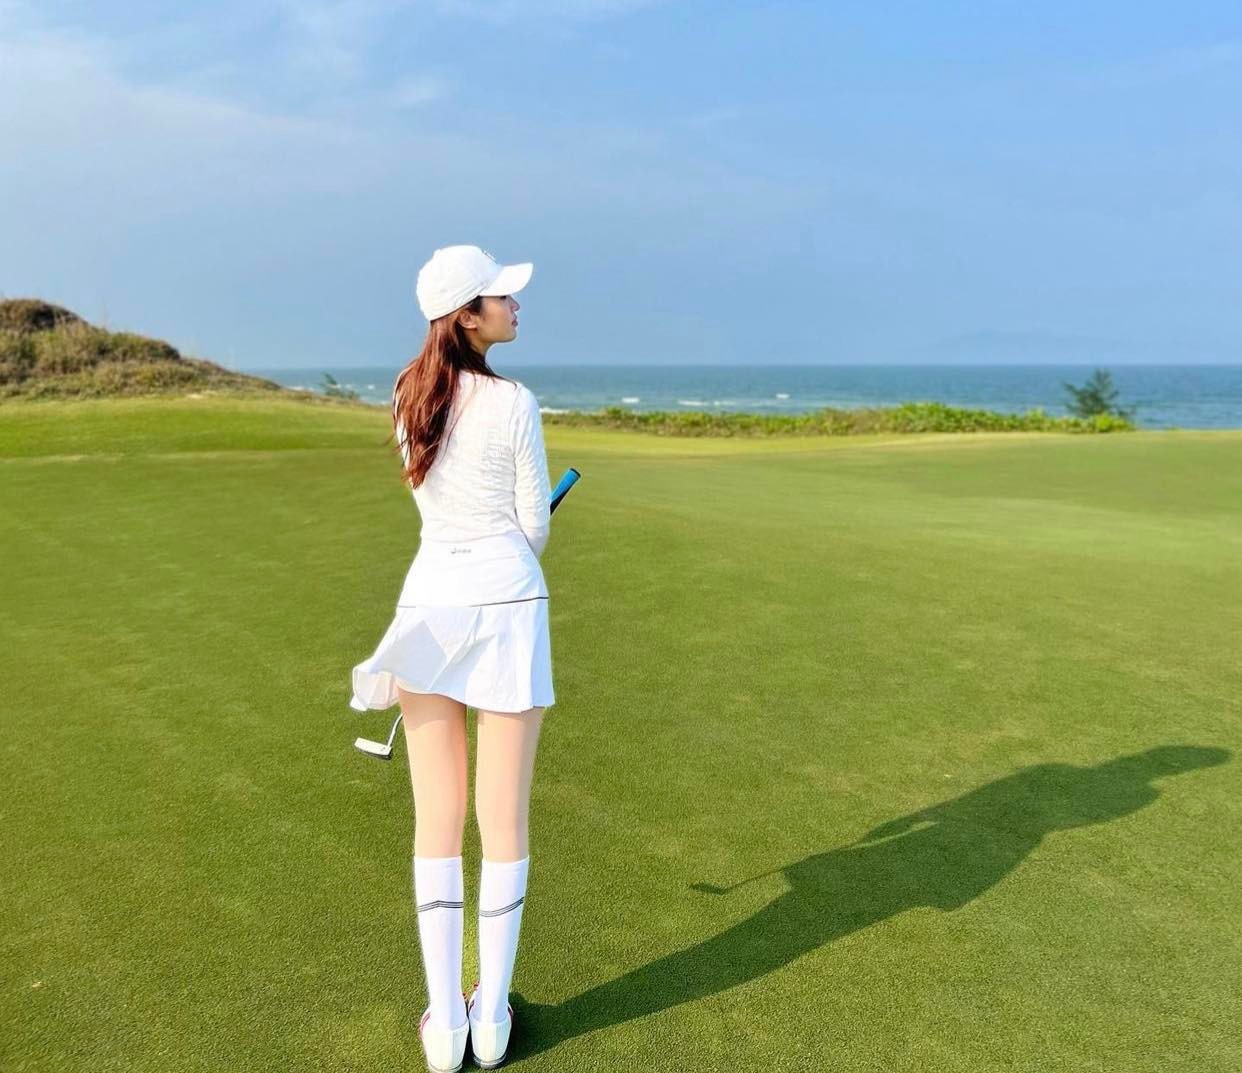 Đỗ Mỹ Linh ghi điểm với set đồ trắng thanh lịch trên sân golf nhưng chiếc váy xếp ly ngắn, mỏng&nbsp;dễ khiến người đẹp "rước họa vào thân" nhất là khi có cơn gió thổi qua.